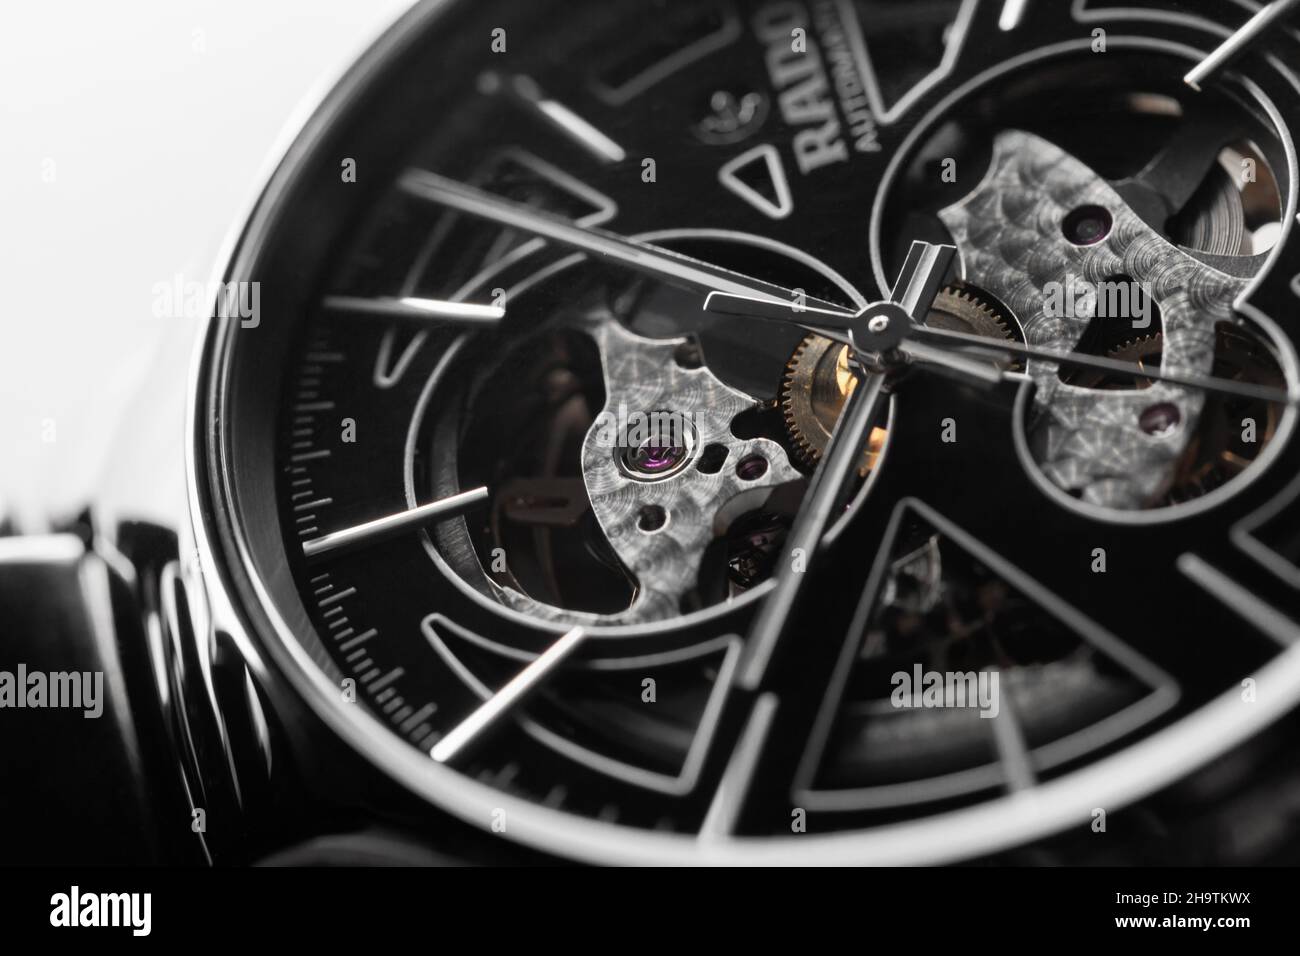 Saint-Pétersbourg, Russie - 11 novembre 2021 : gros plan de la montre mécanique de luxe suisse avec affaire noire et corps en céramique.Rado Banque D'Images